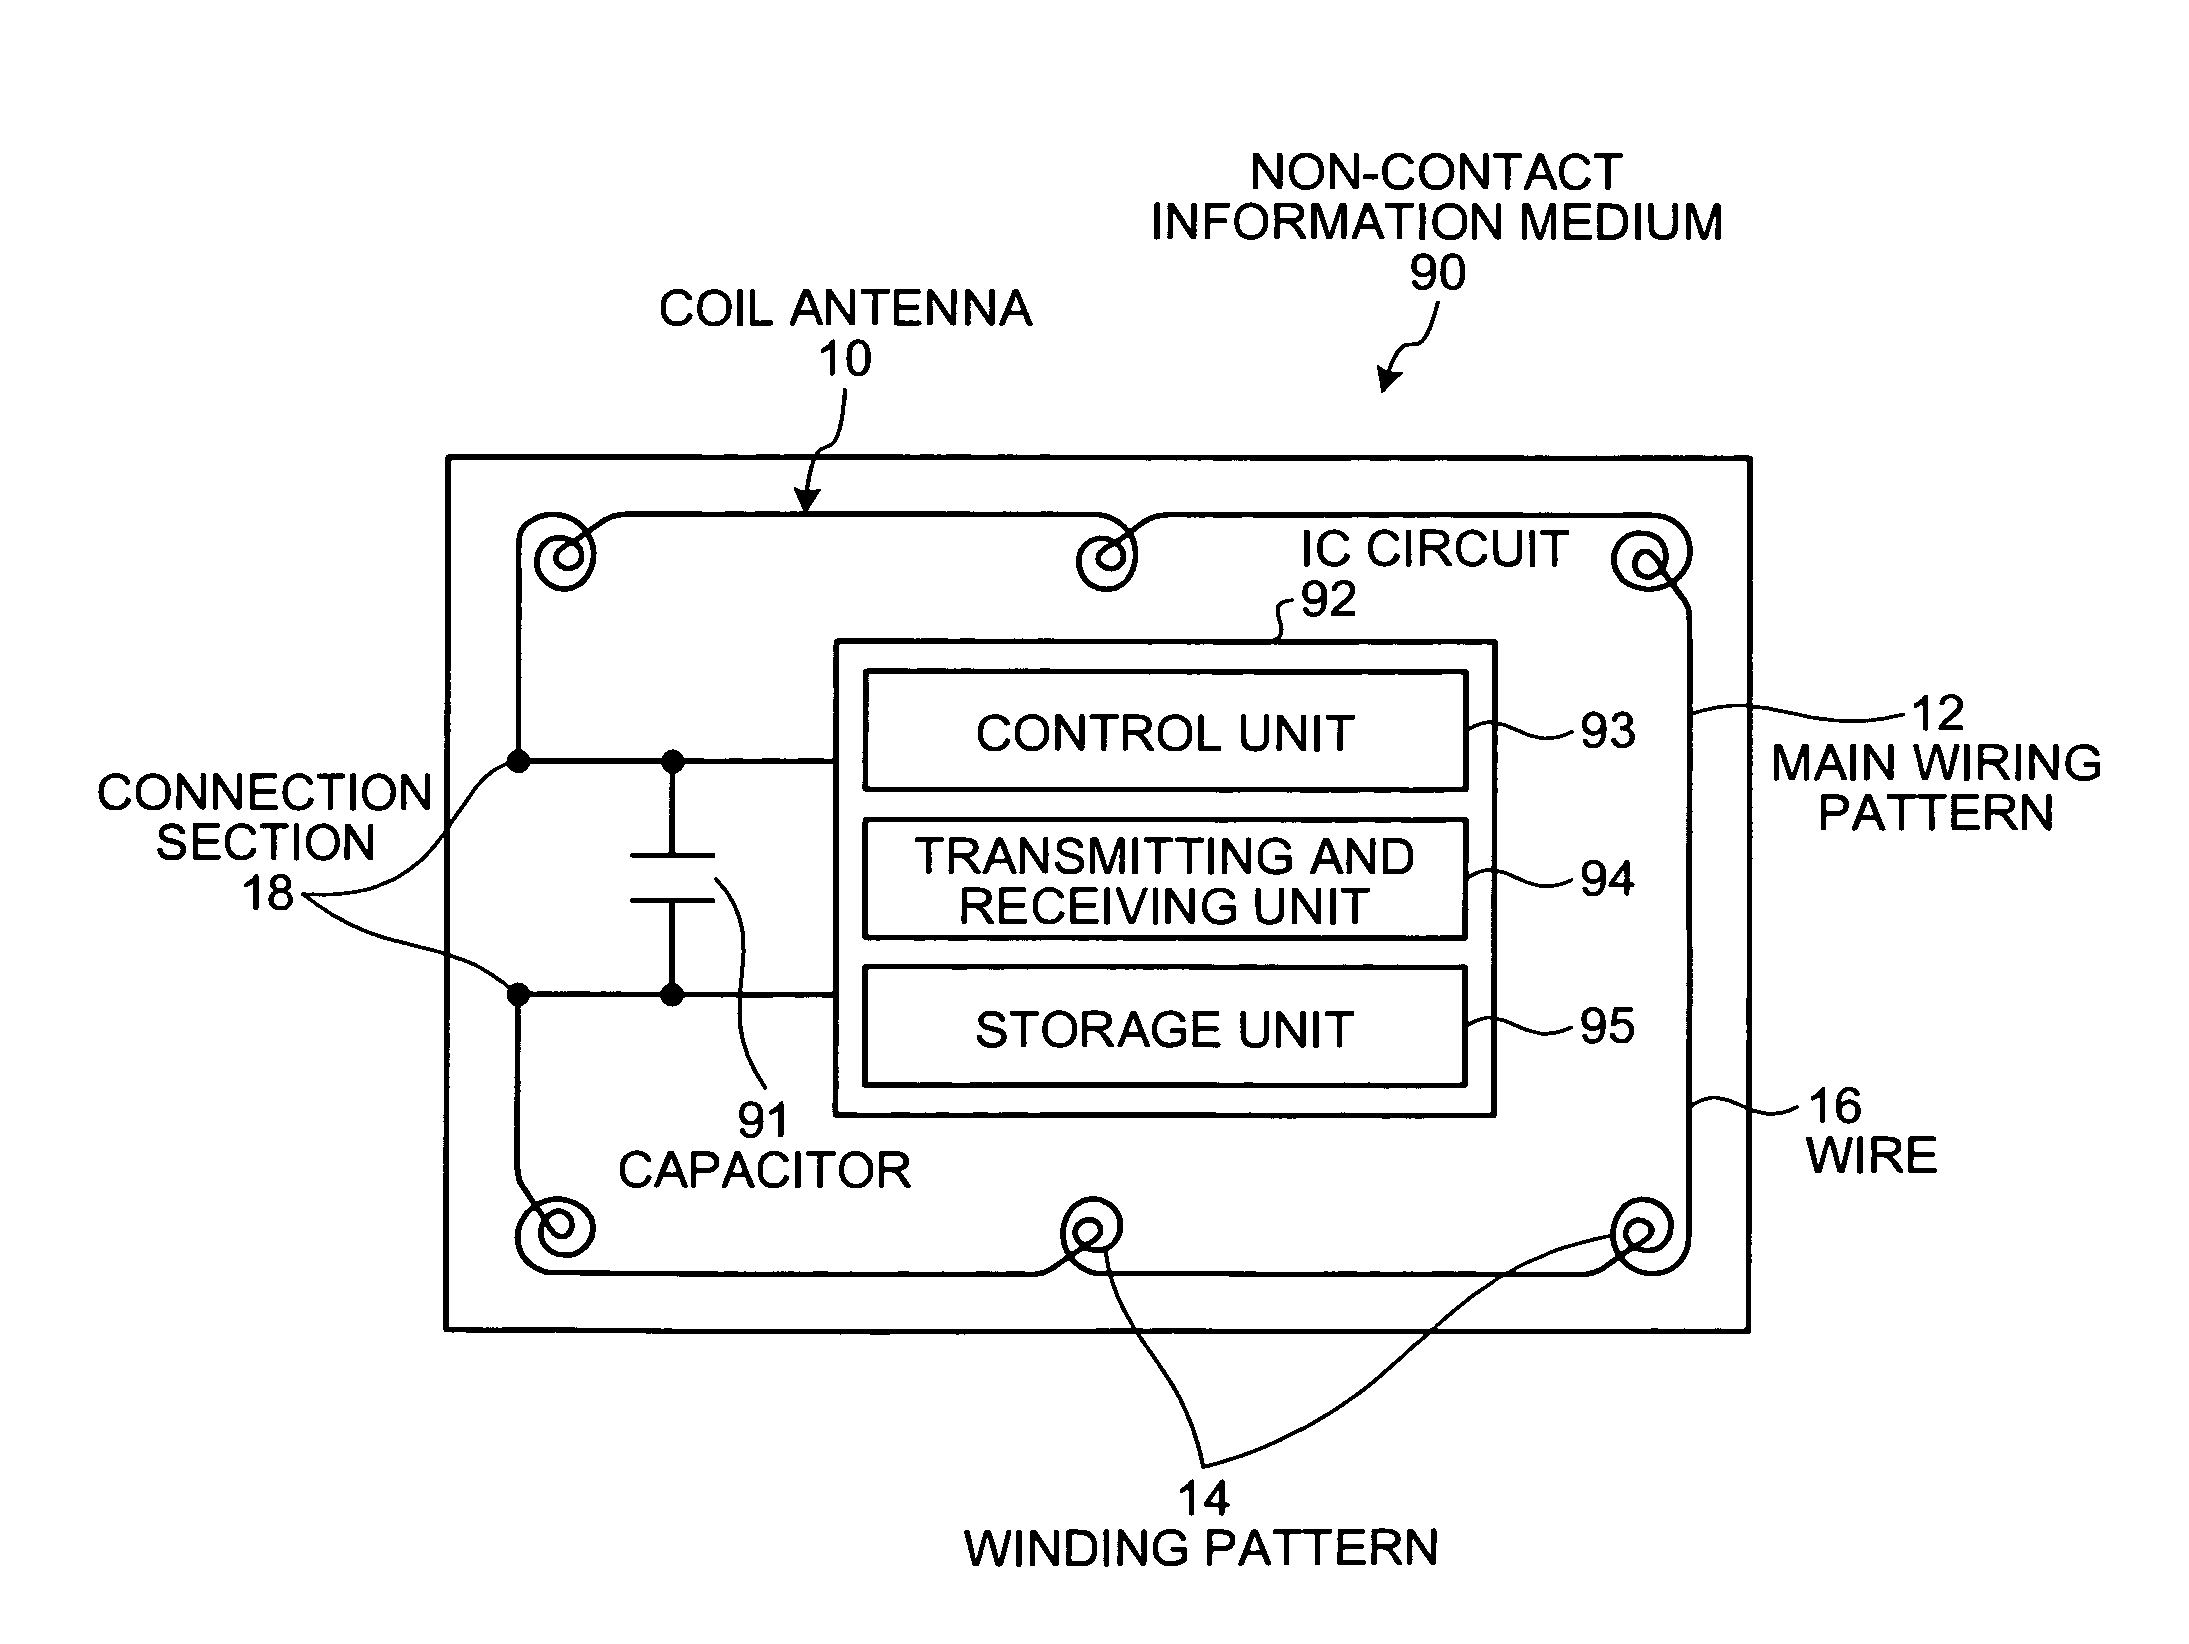 Coil antenna and non-contact information medium